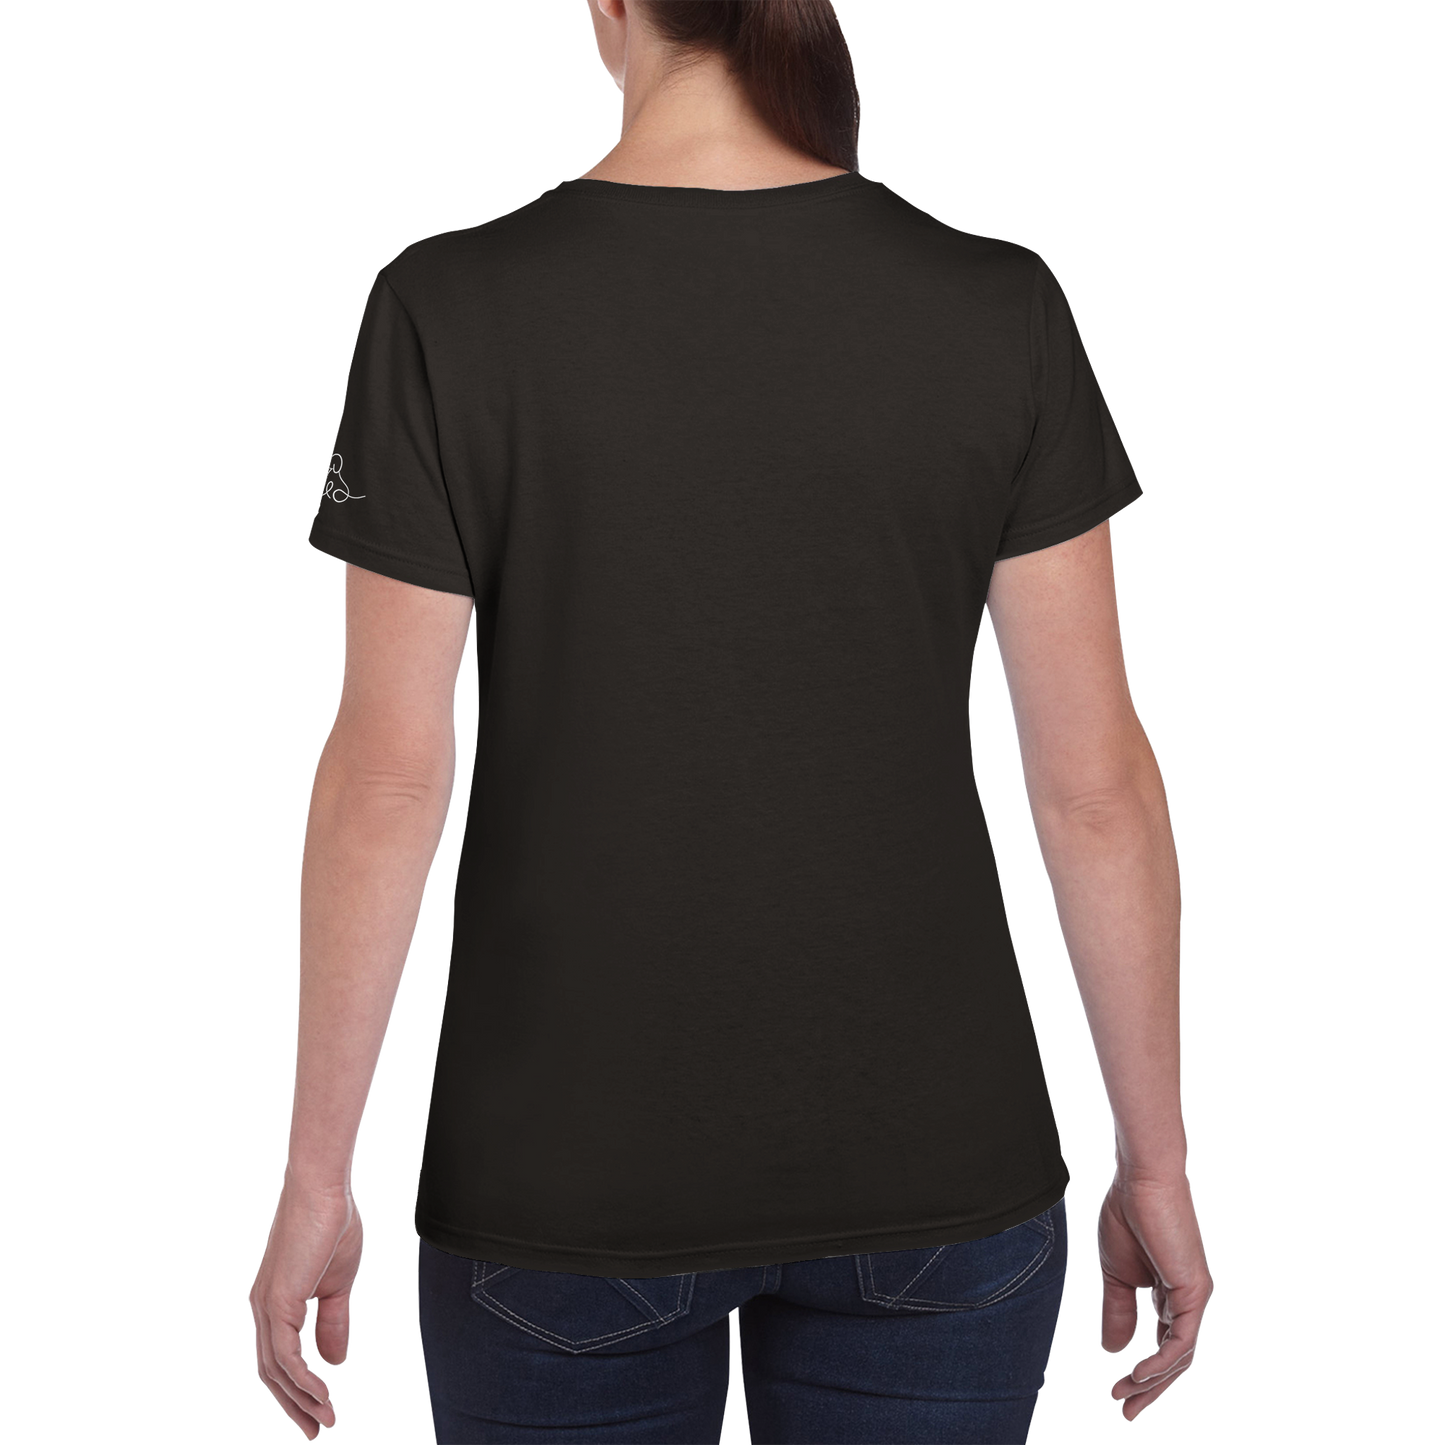 SHIRTGLÜCK vielseitiges Damen-T-Shirt "together" mit Rundhalsausschnitt | 100% Baumwolle mit 180 g/m²